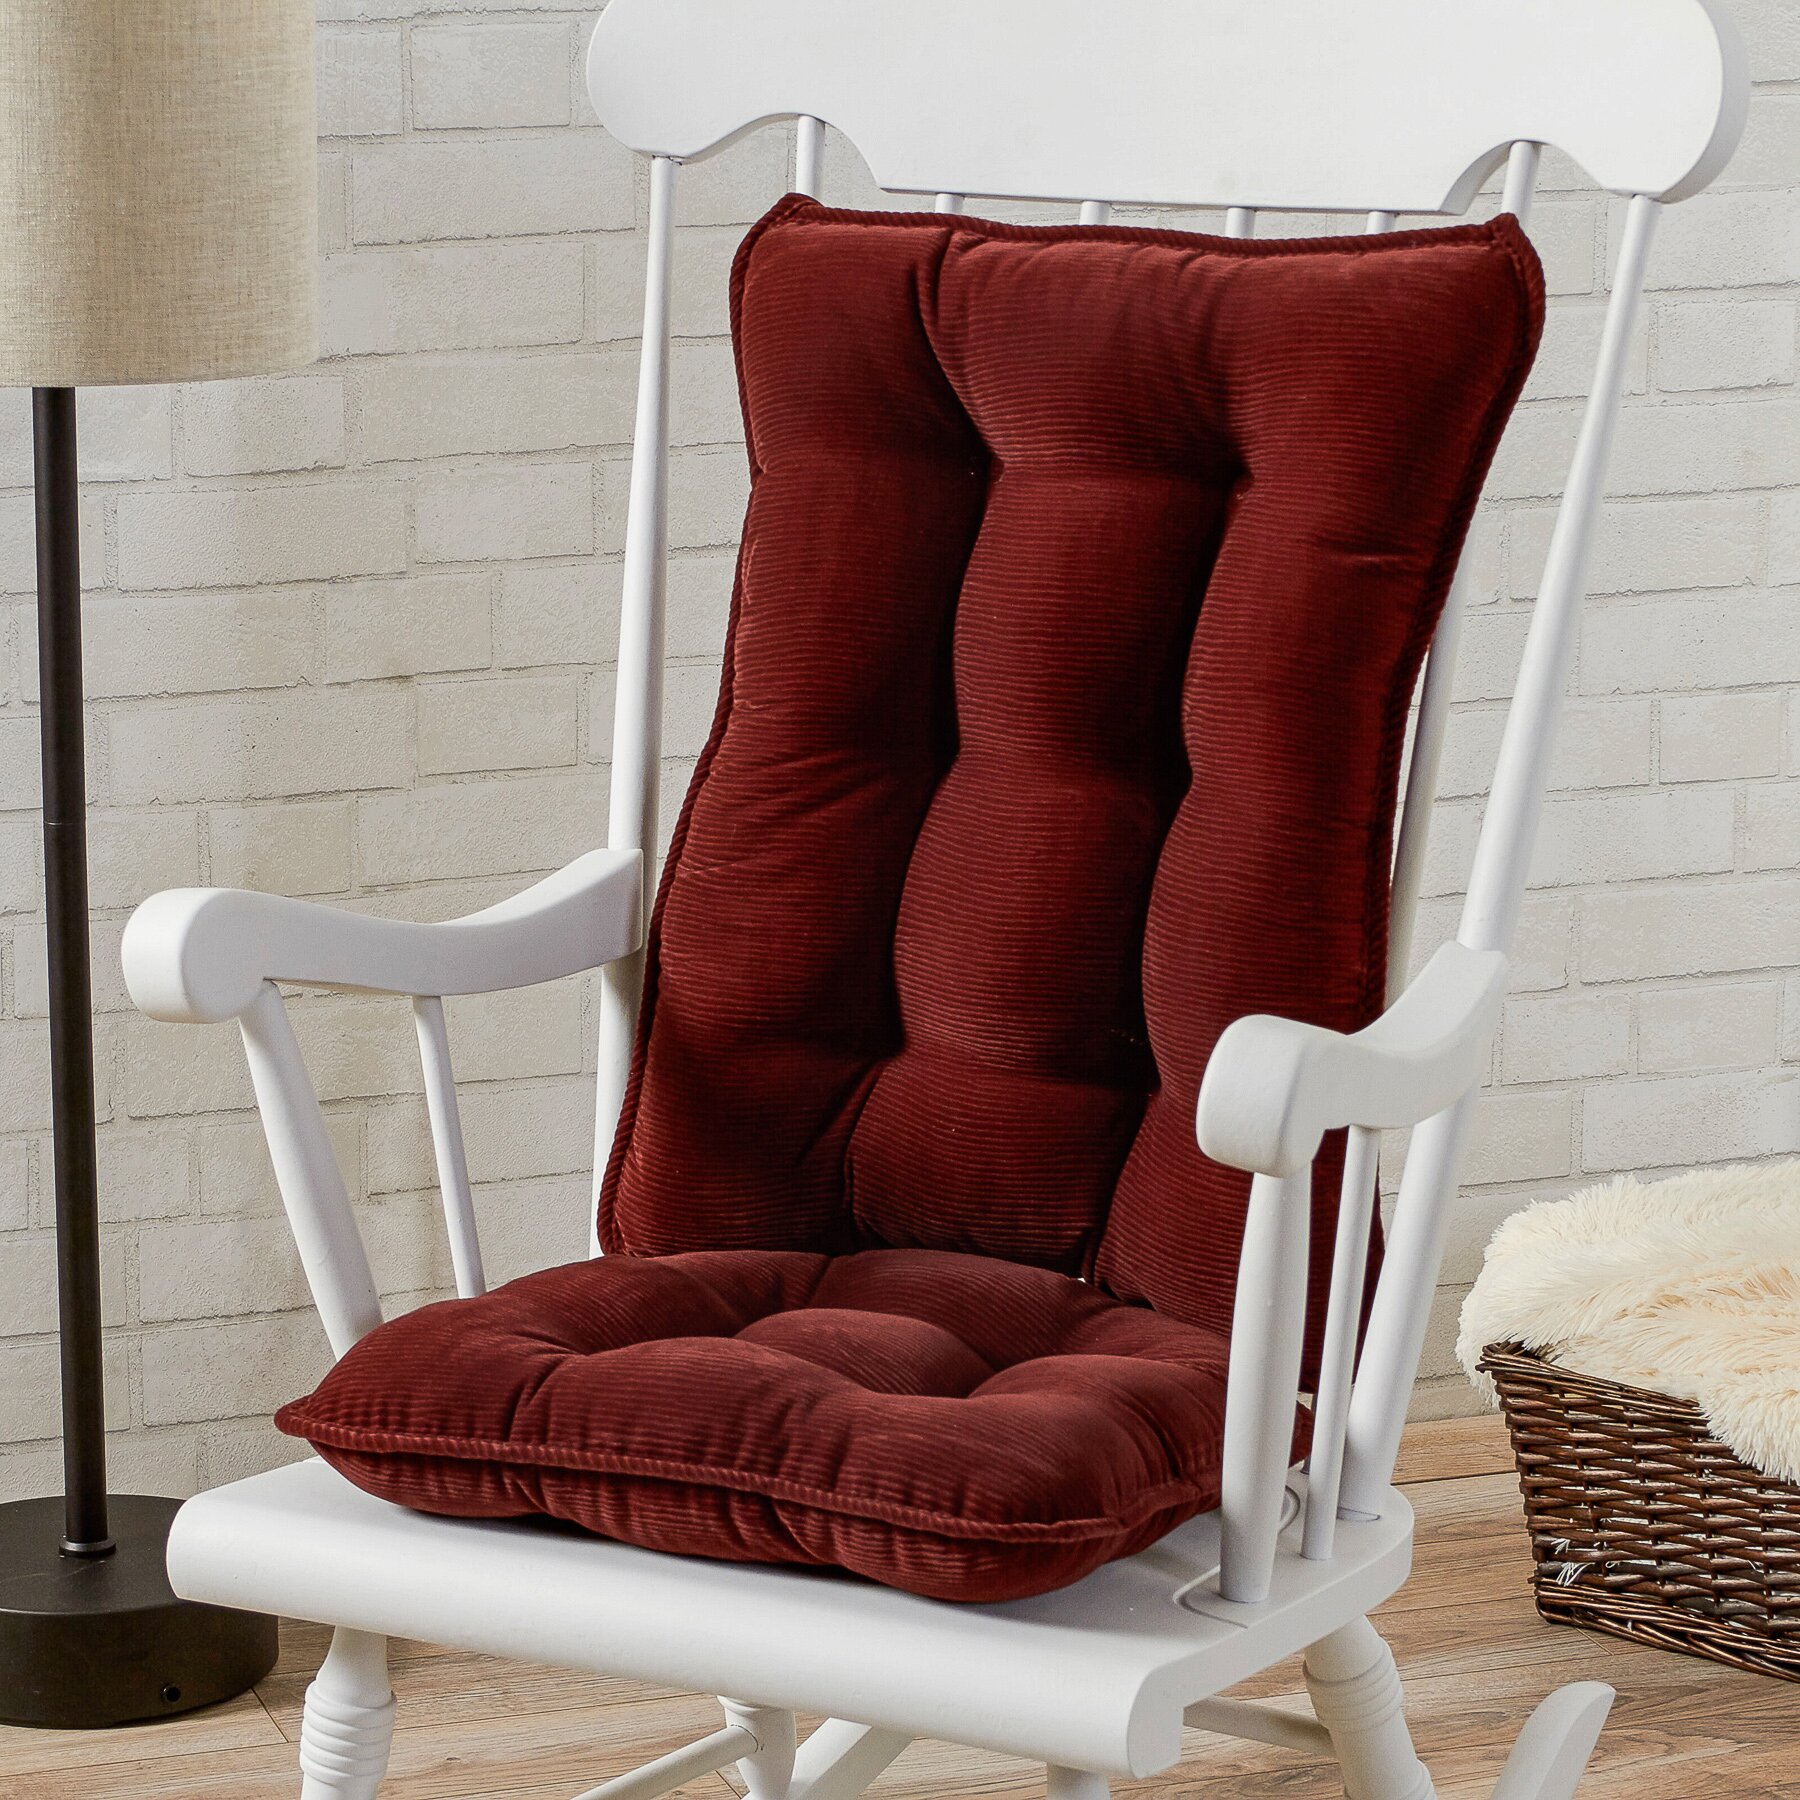 Greendale Home Fashions Rocking Chair Cushion & Reviews | Wayfair